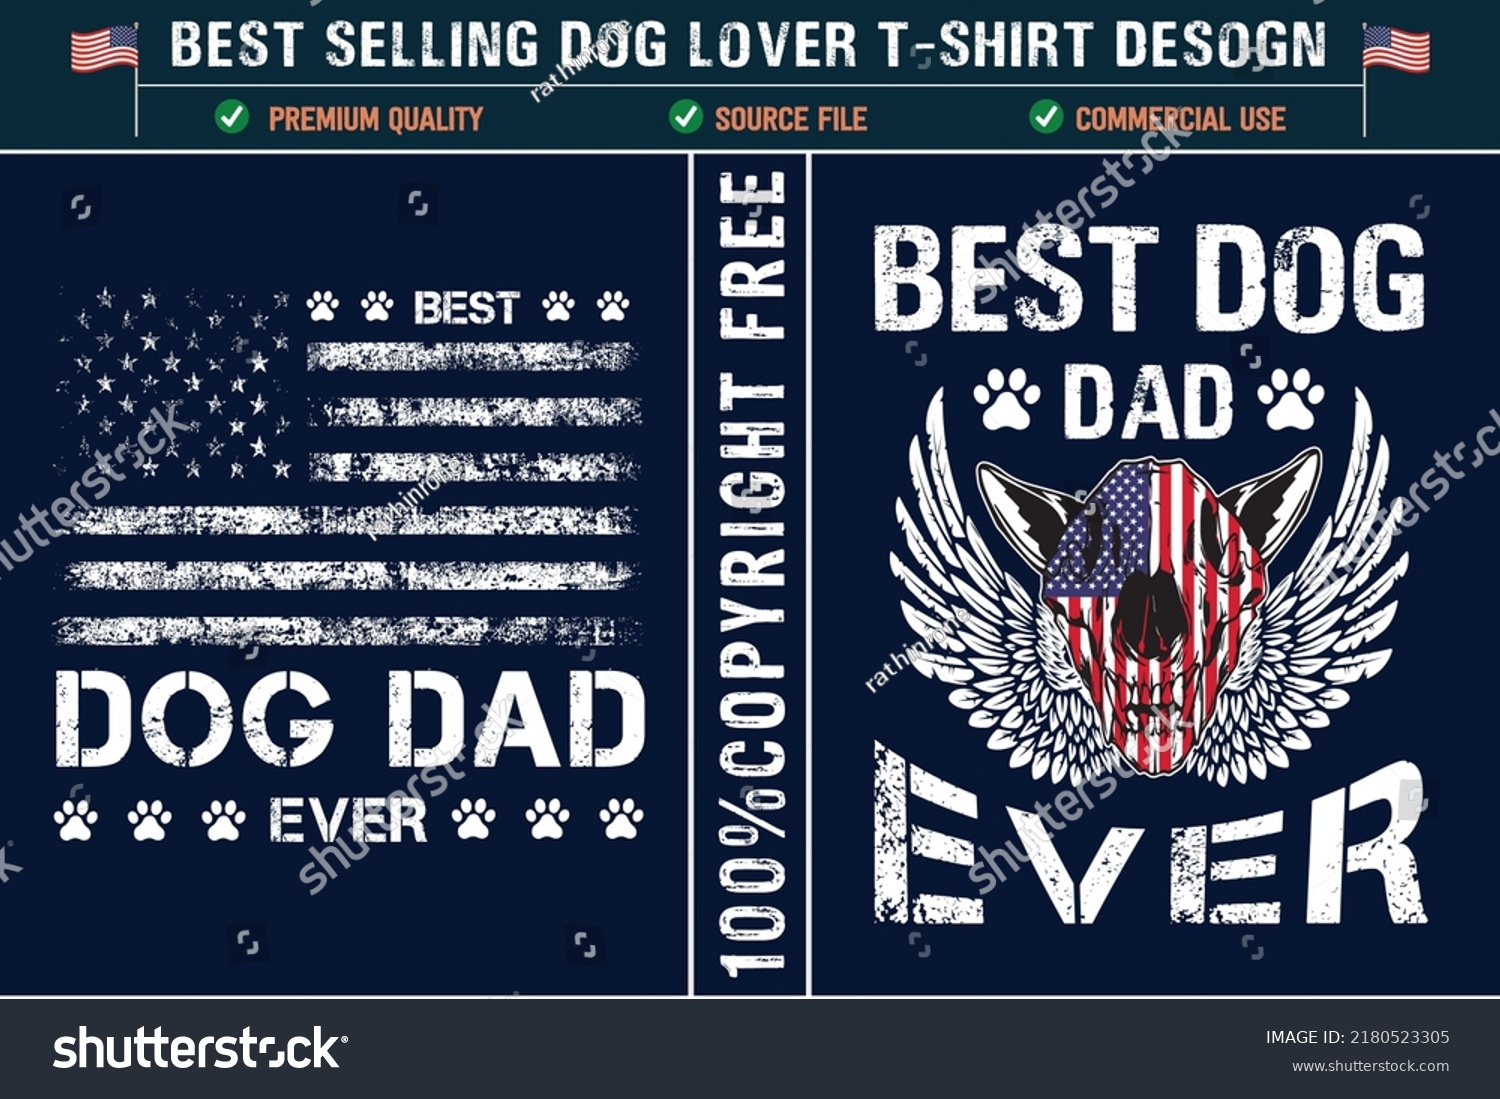 SVG of Best dog dad ever usa patriotic dog lover t-shirt design svg